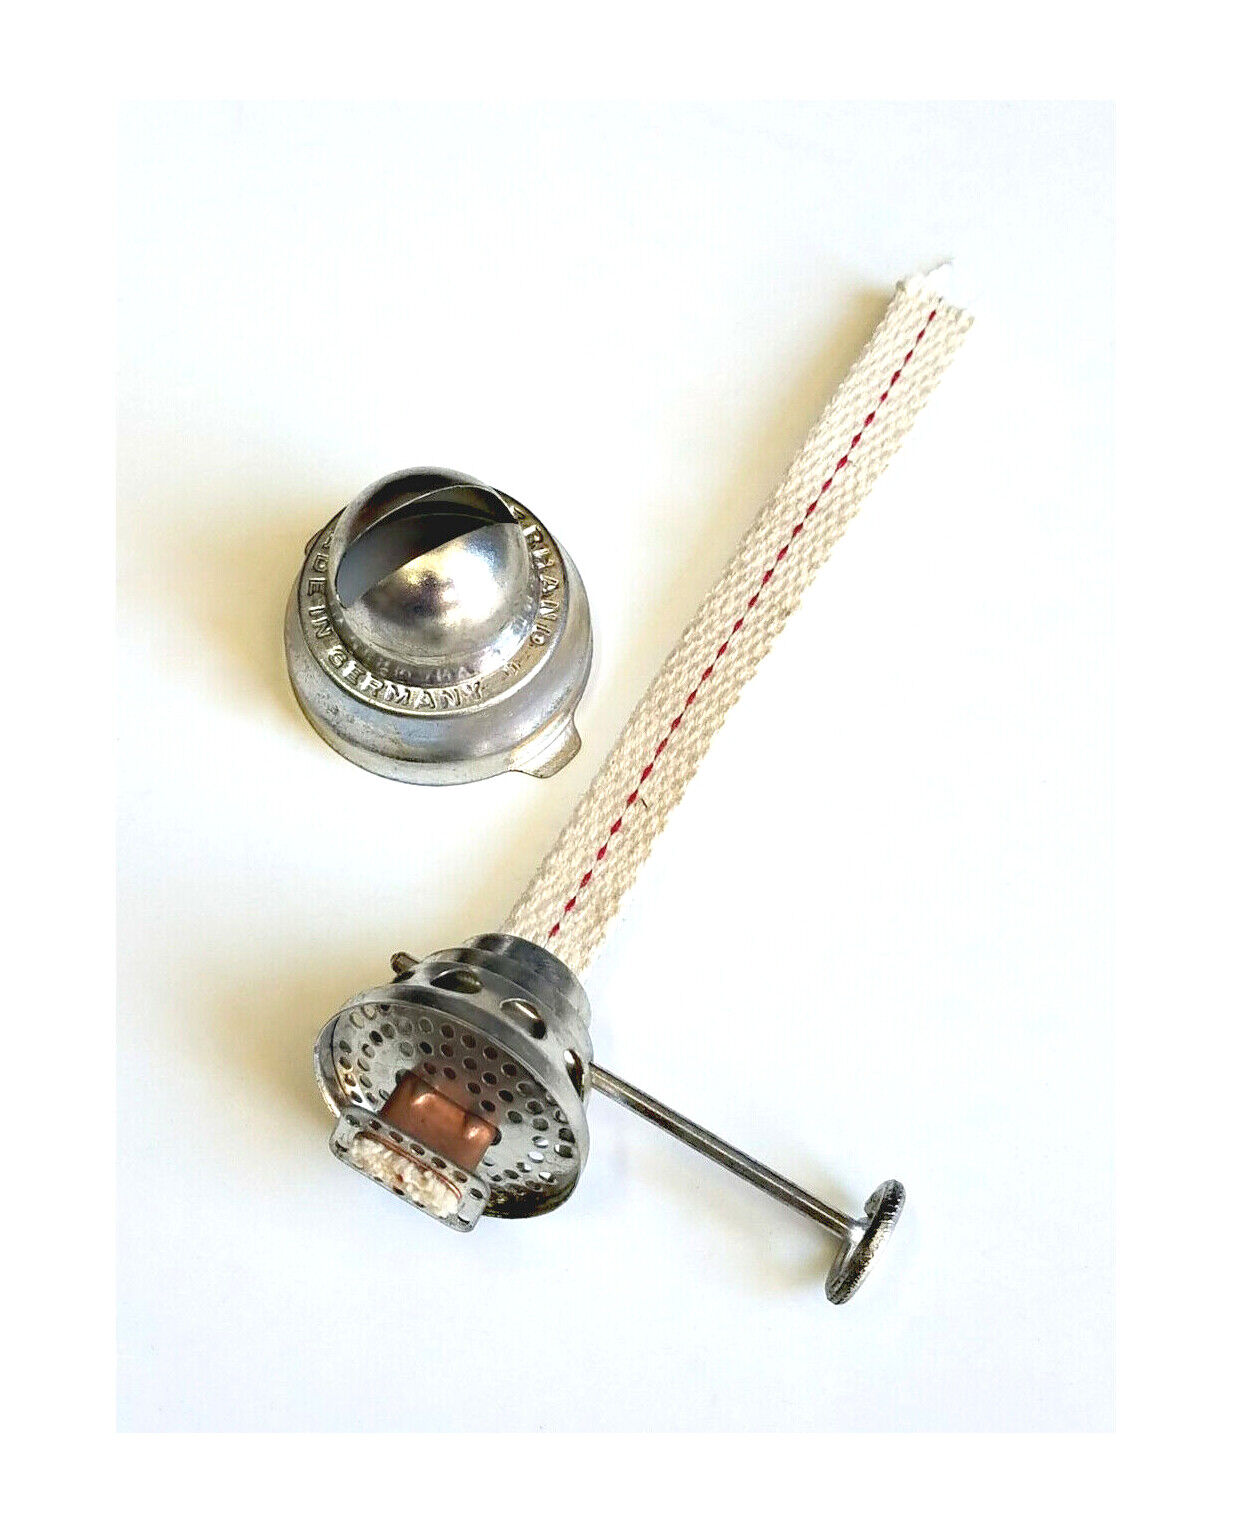 Pre-1950 Vintage Nier-Feuerhand #275 Wing-Lock Cone Lantern Burner - NOS